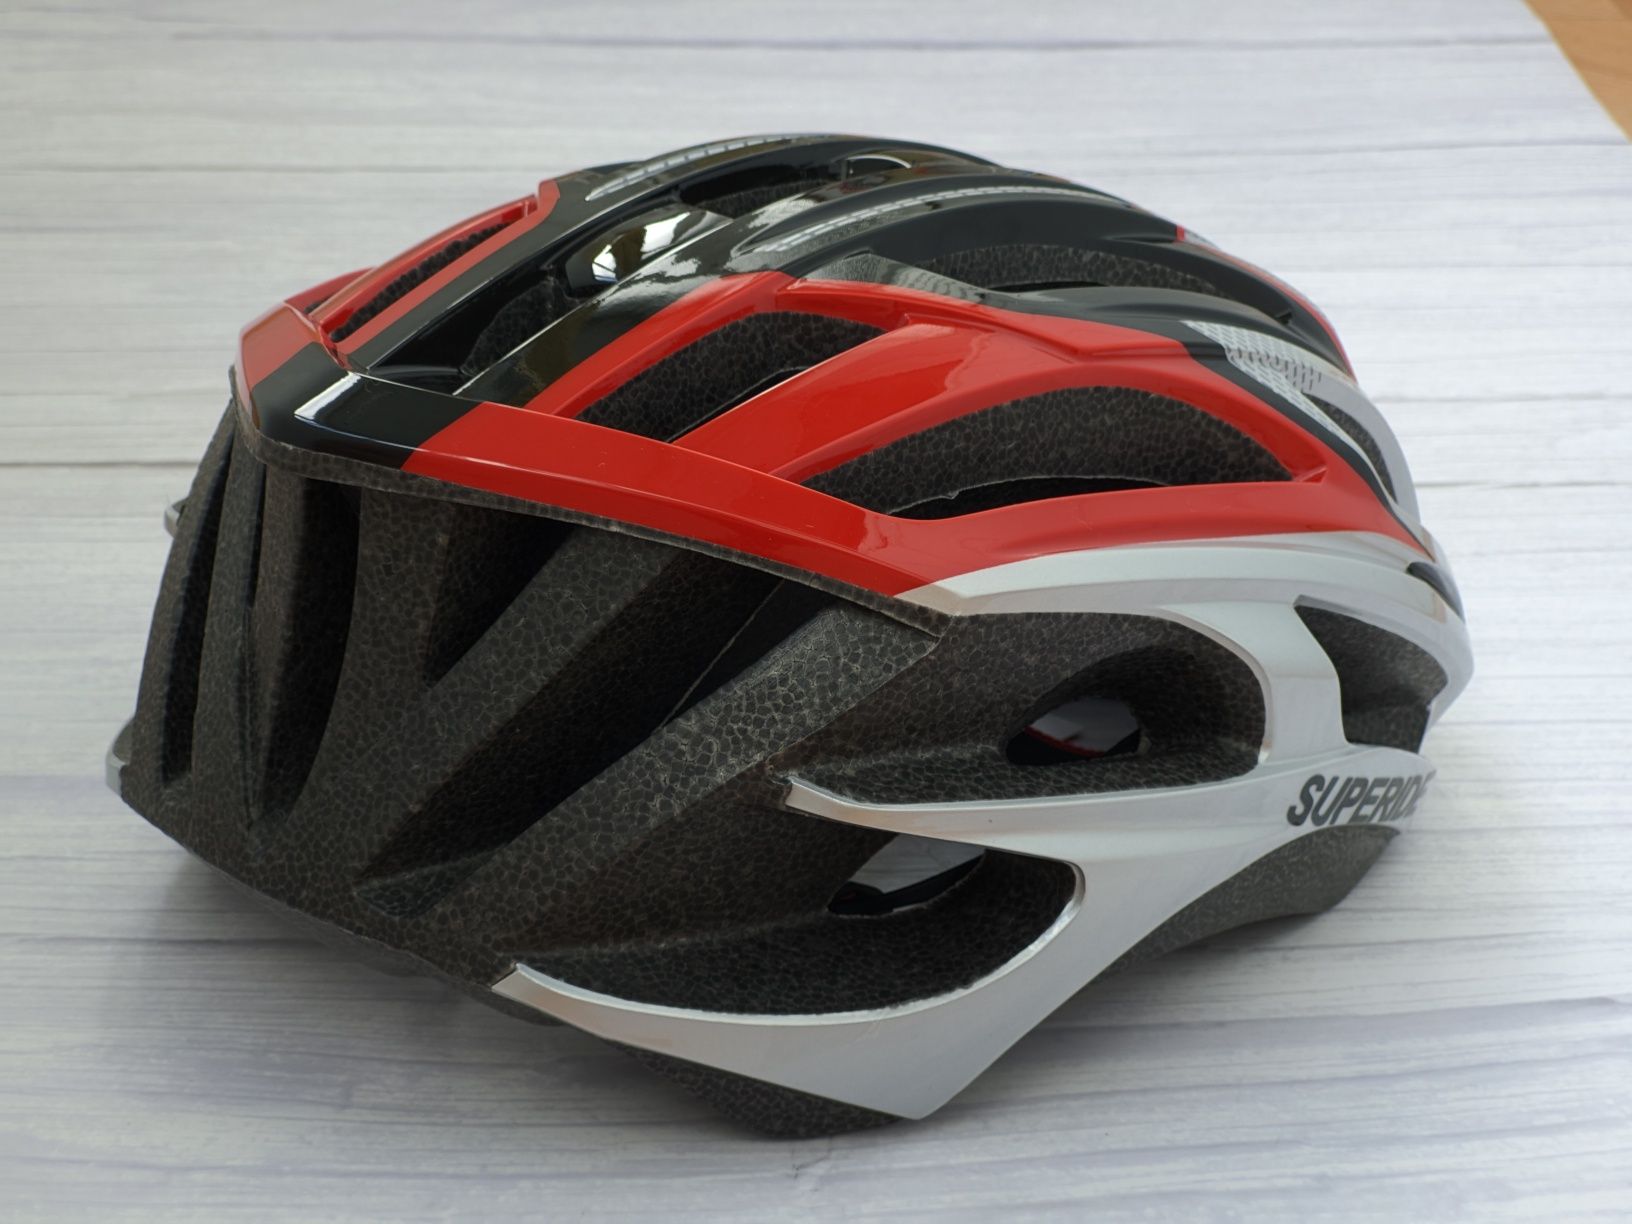 Велошлем SUPERIDE-81 Silver, велосипедный шлем для велосипеда